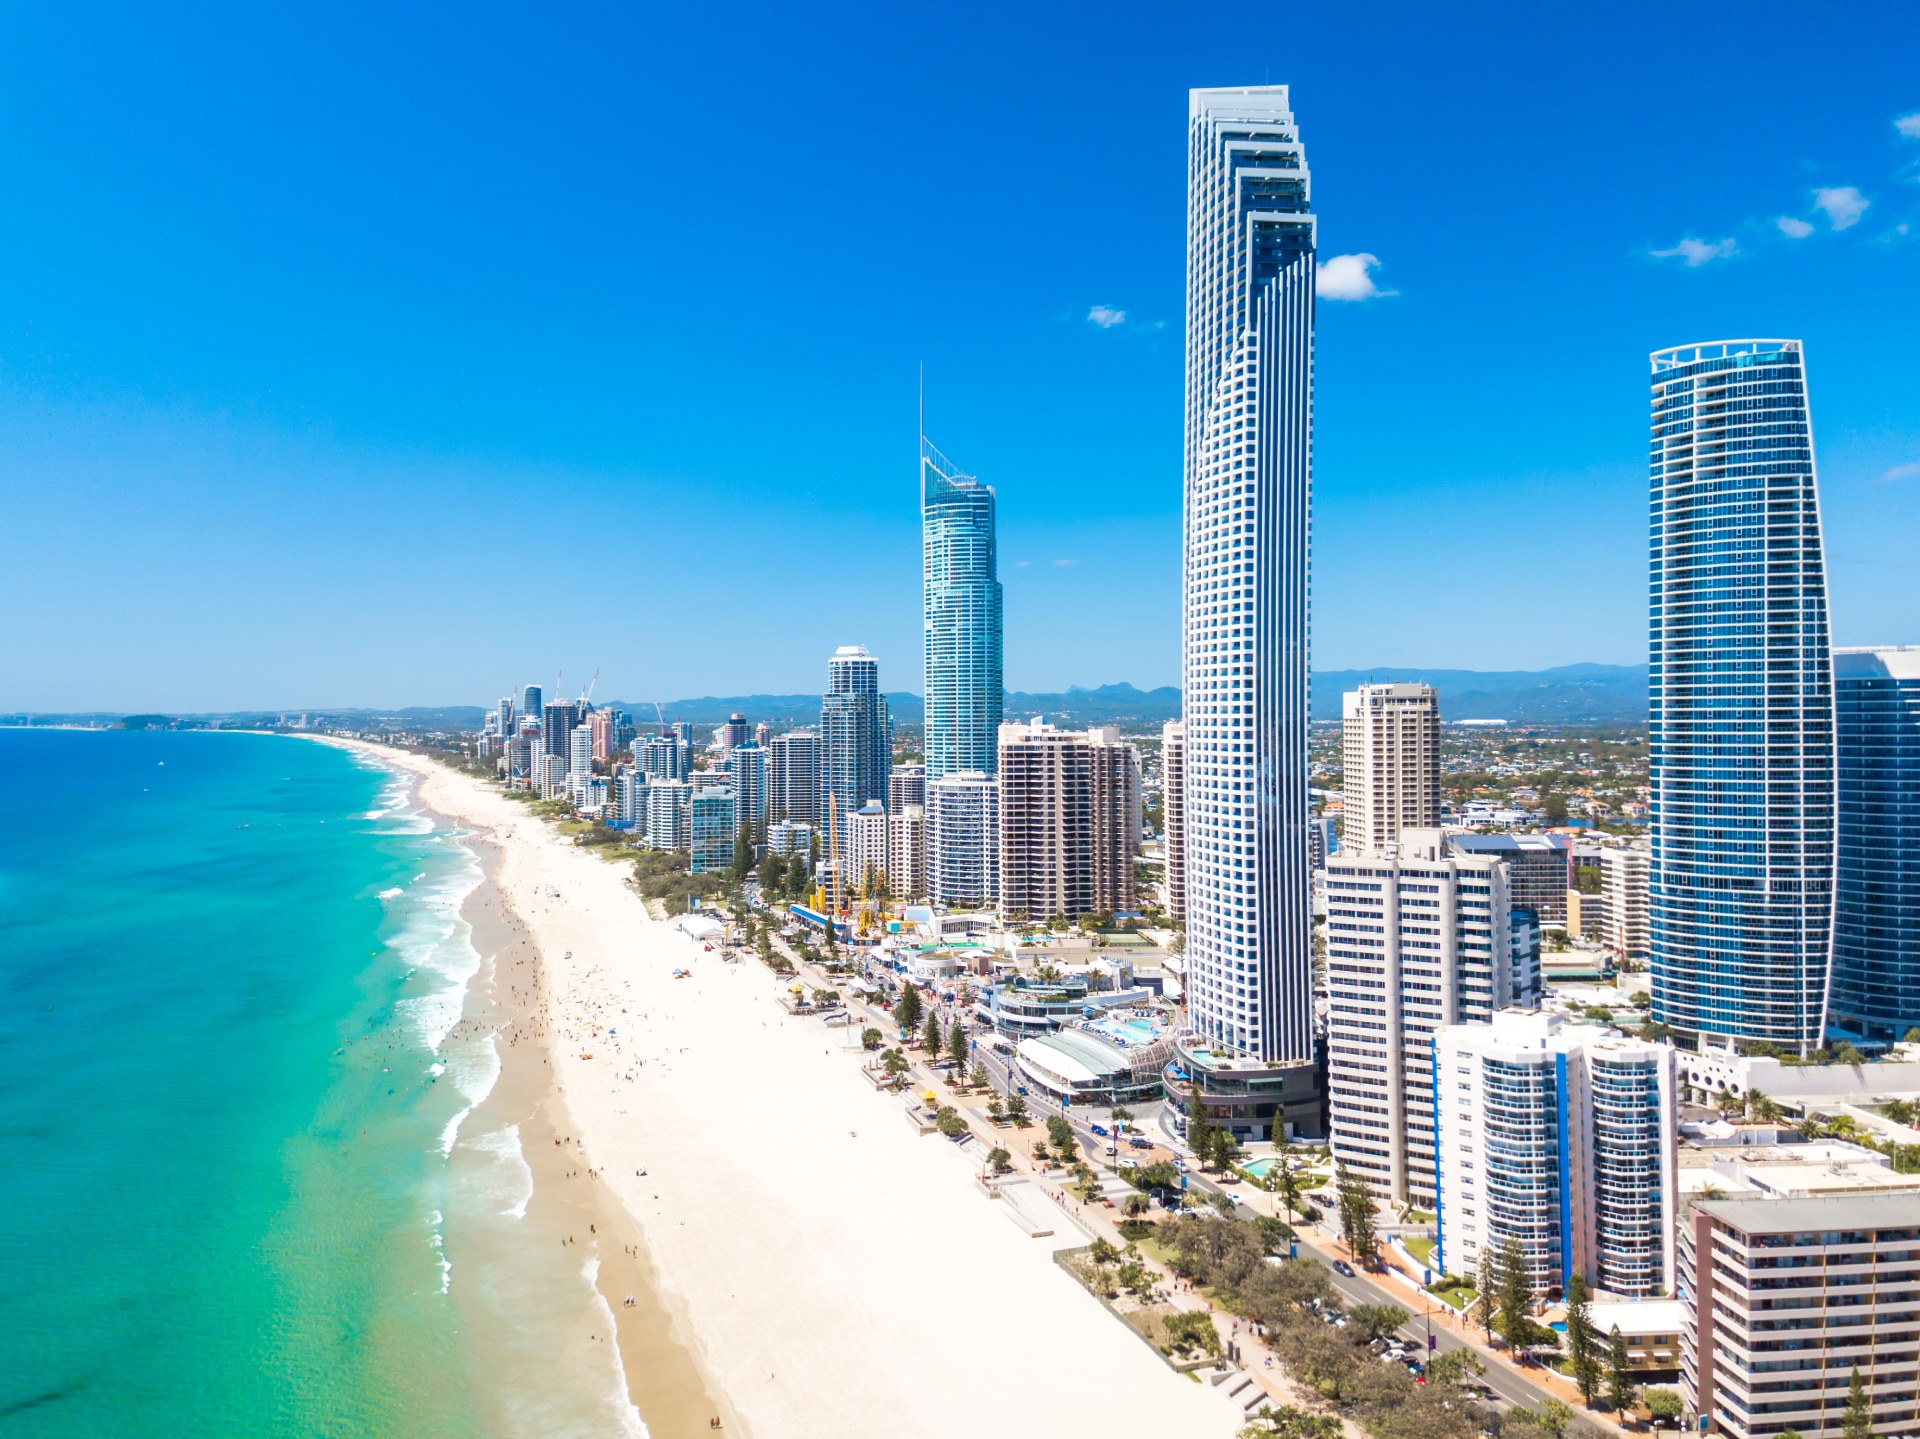 T1 Gold Coast, la plus haute tour d'Australie - We Build Value